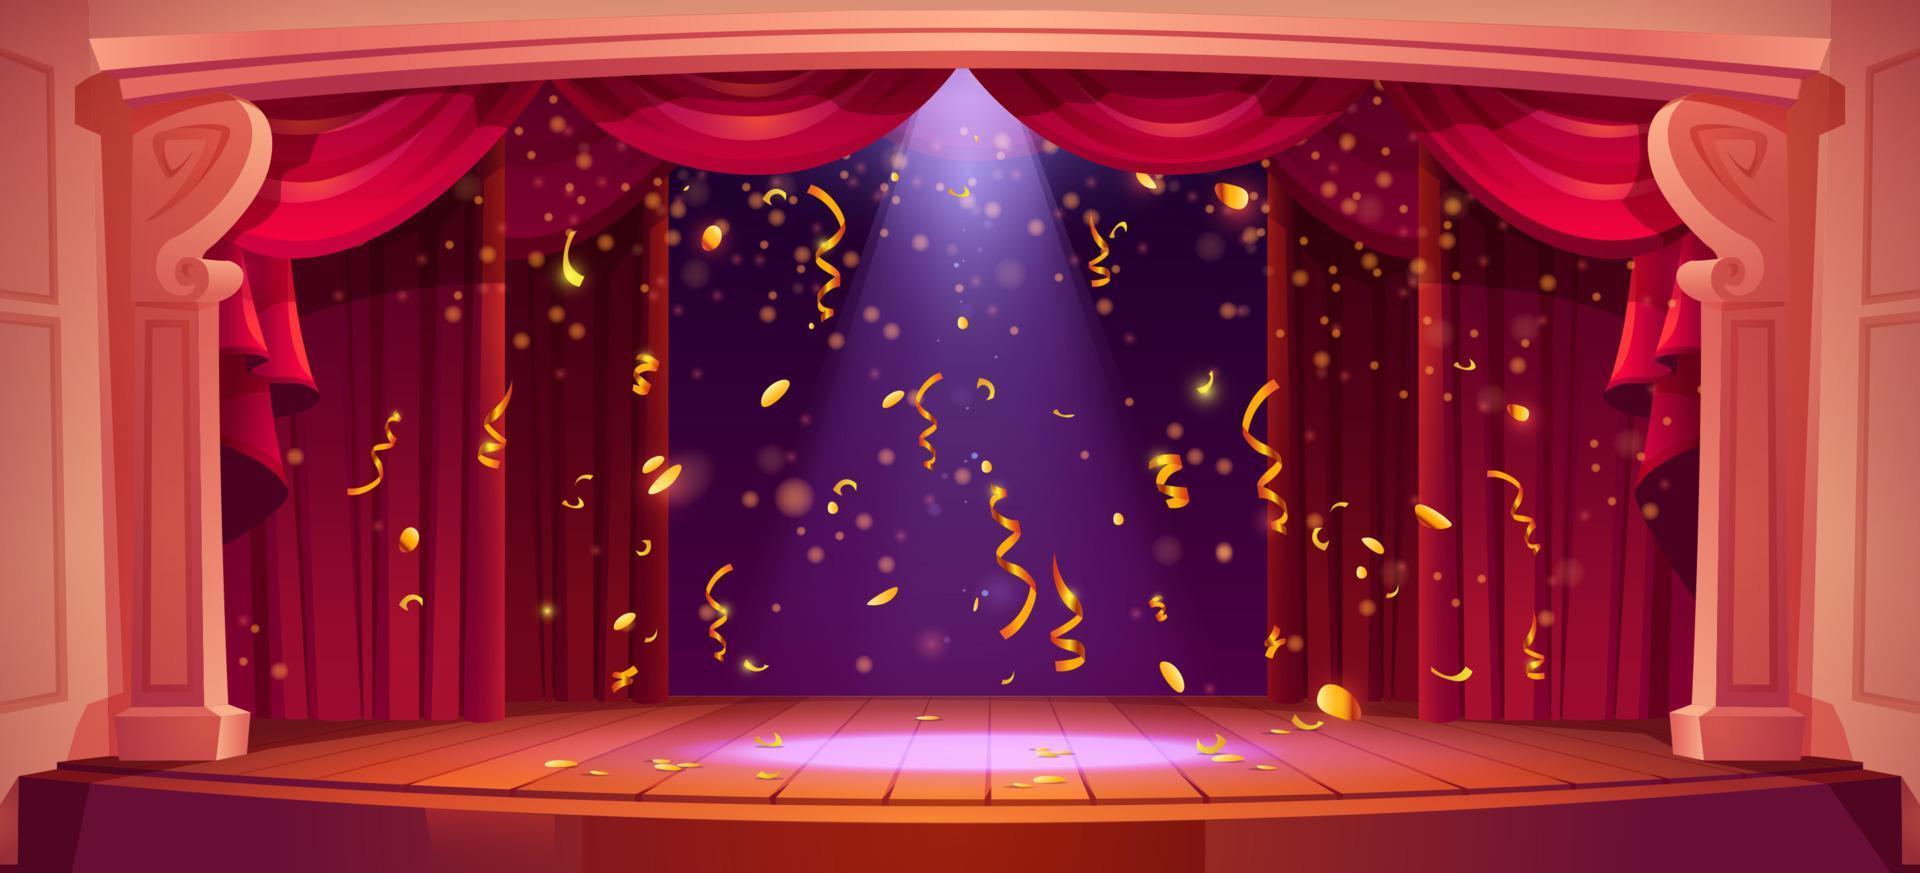 teatro etapa com vermelho cortina, luz e confete vetor